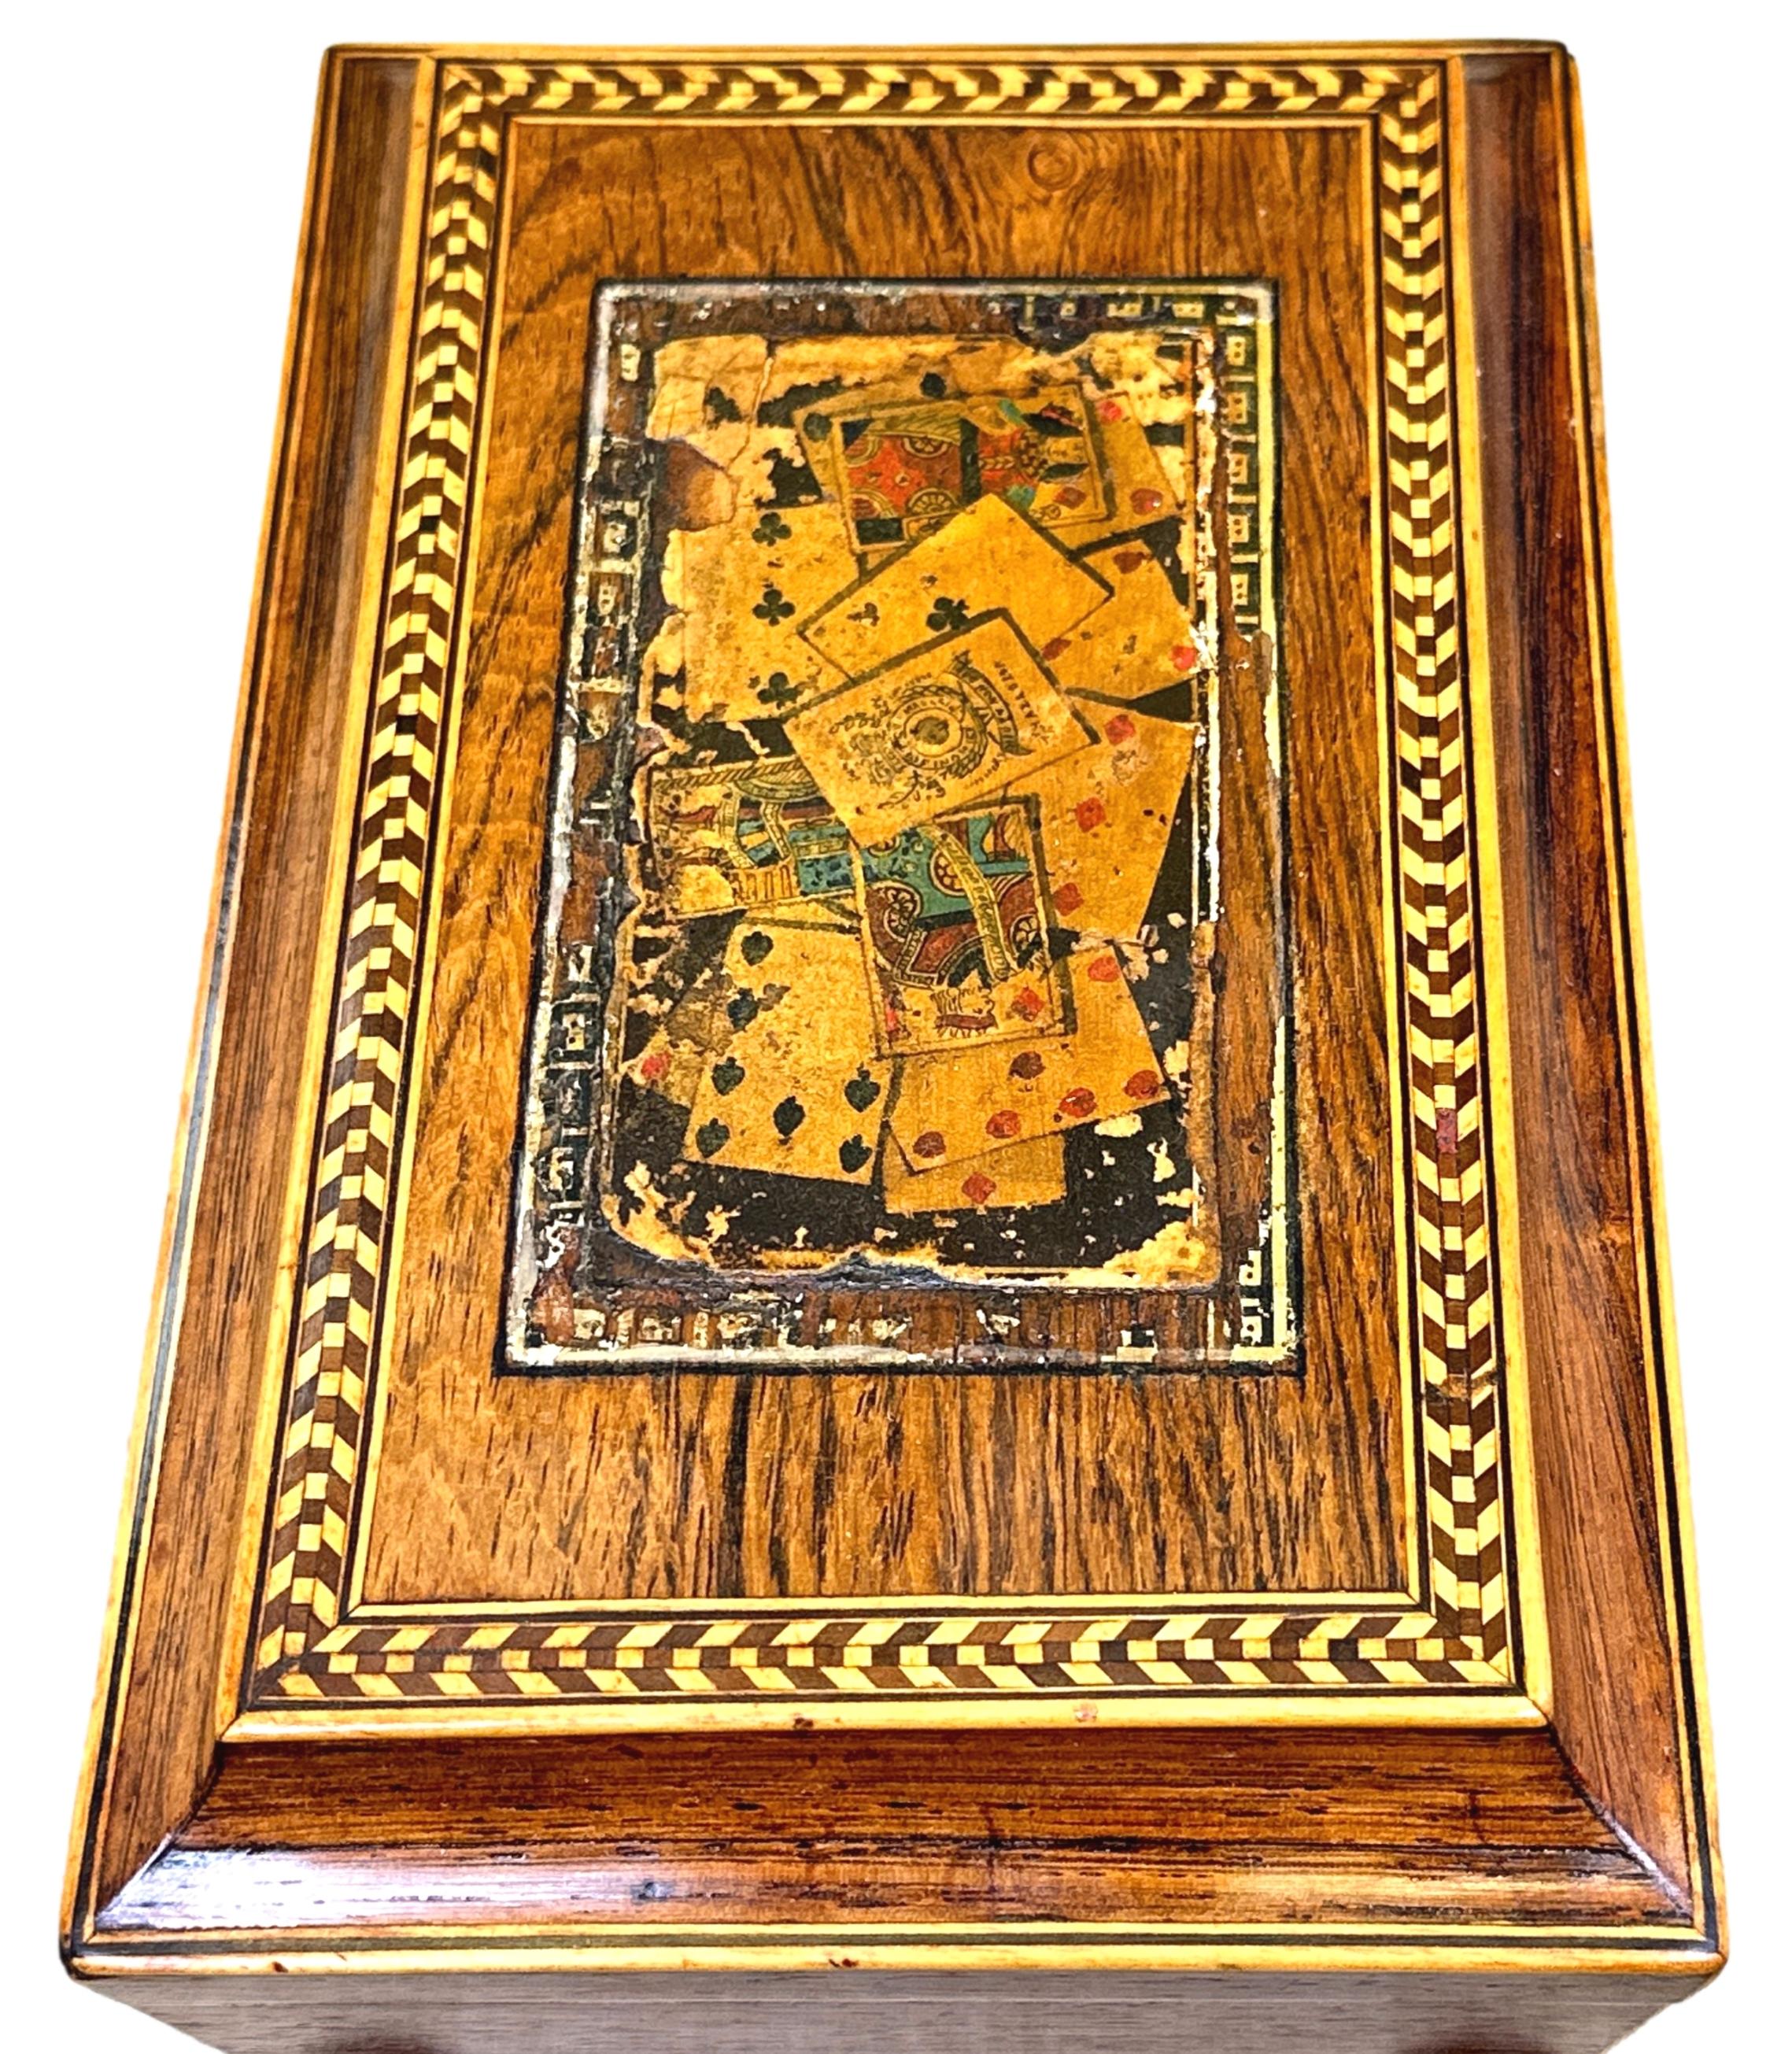 Très belle boîte à cartes, ou à jeux, en bois de rose du milieu du XIXe siècle, avec de charmantes cartes polychromes et un décor de cordes en damier sur le couvercle à charnière, renfermant un intérieur tapissé de papier avec des compartiments pour